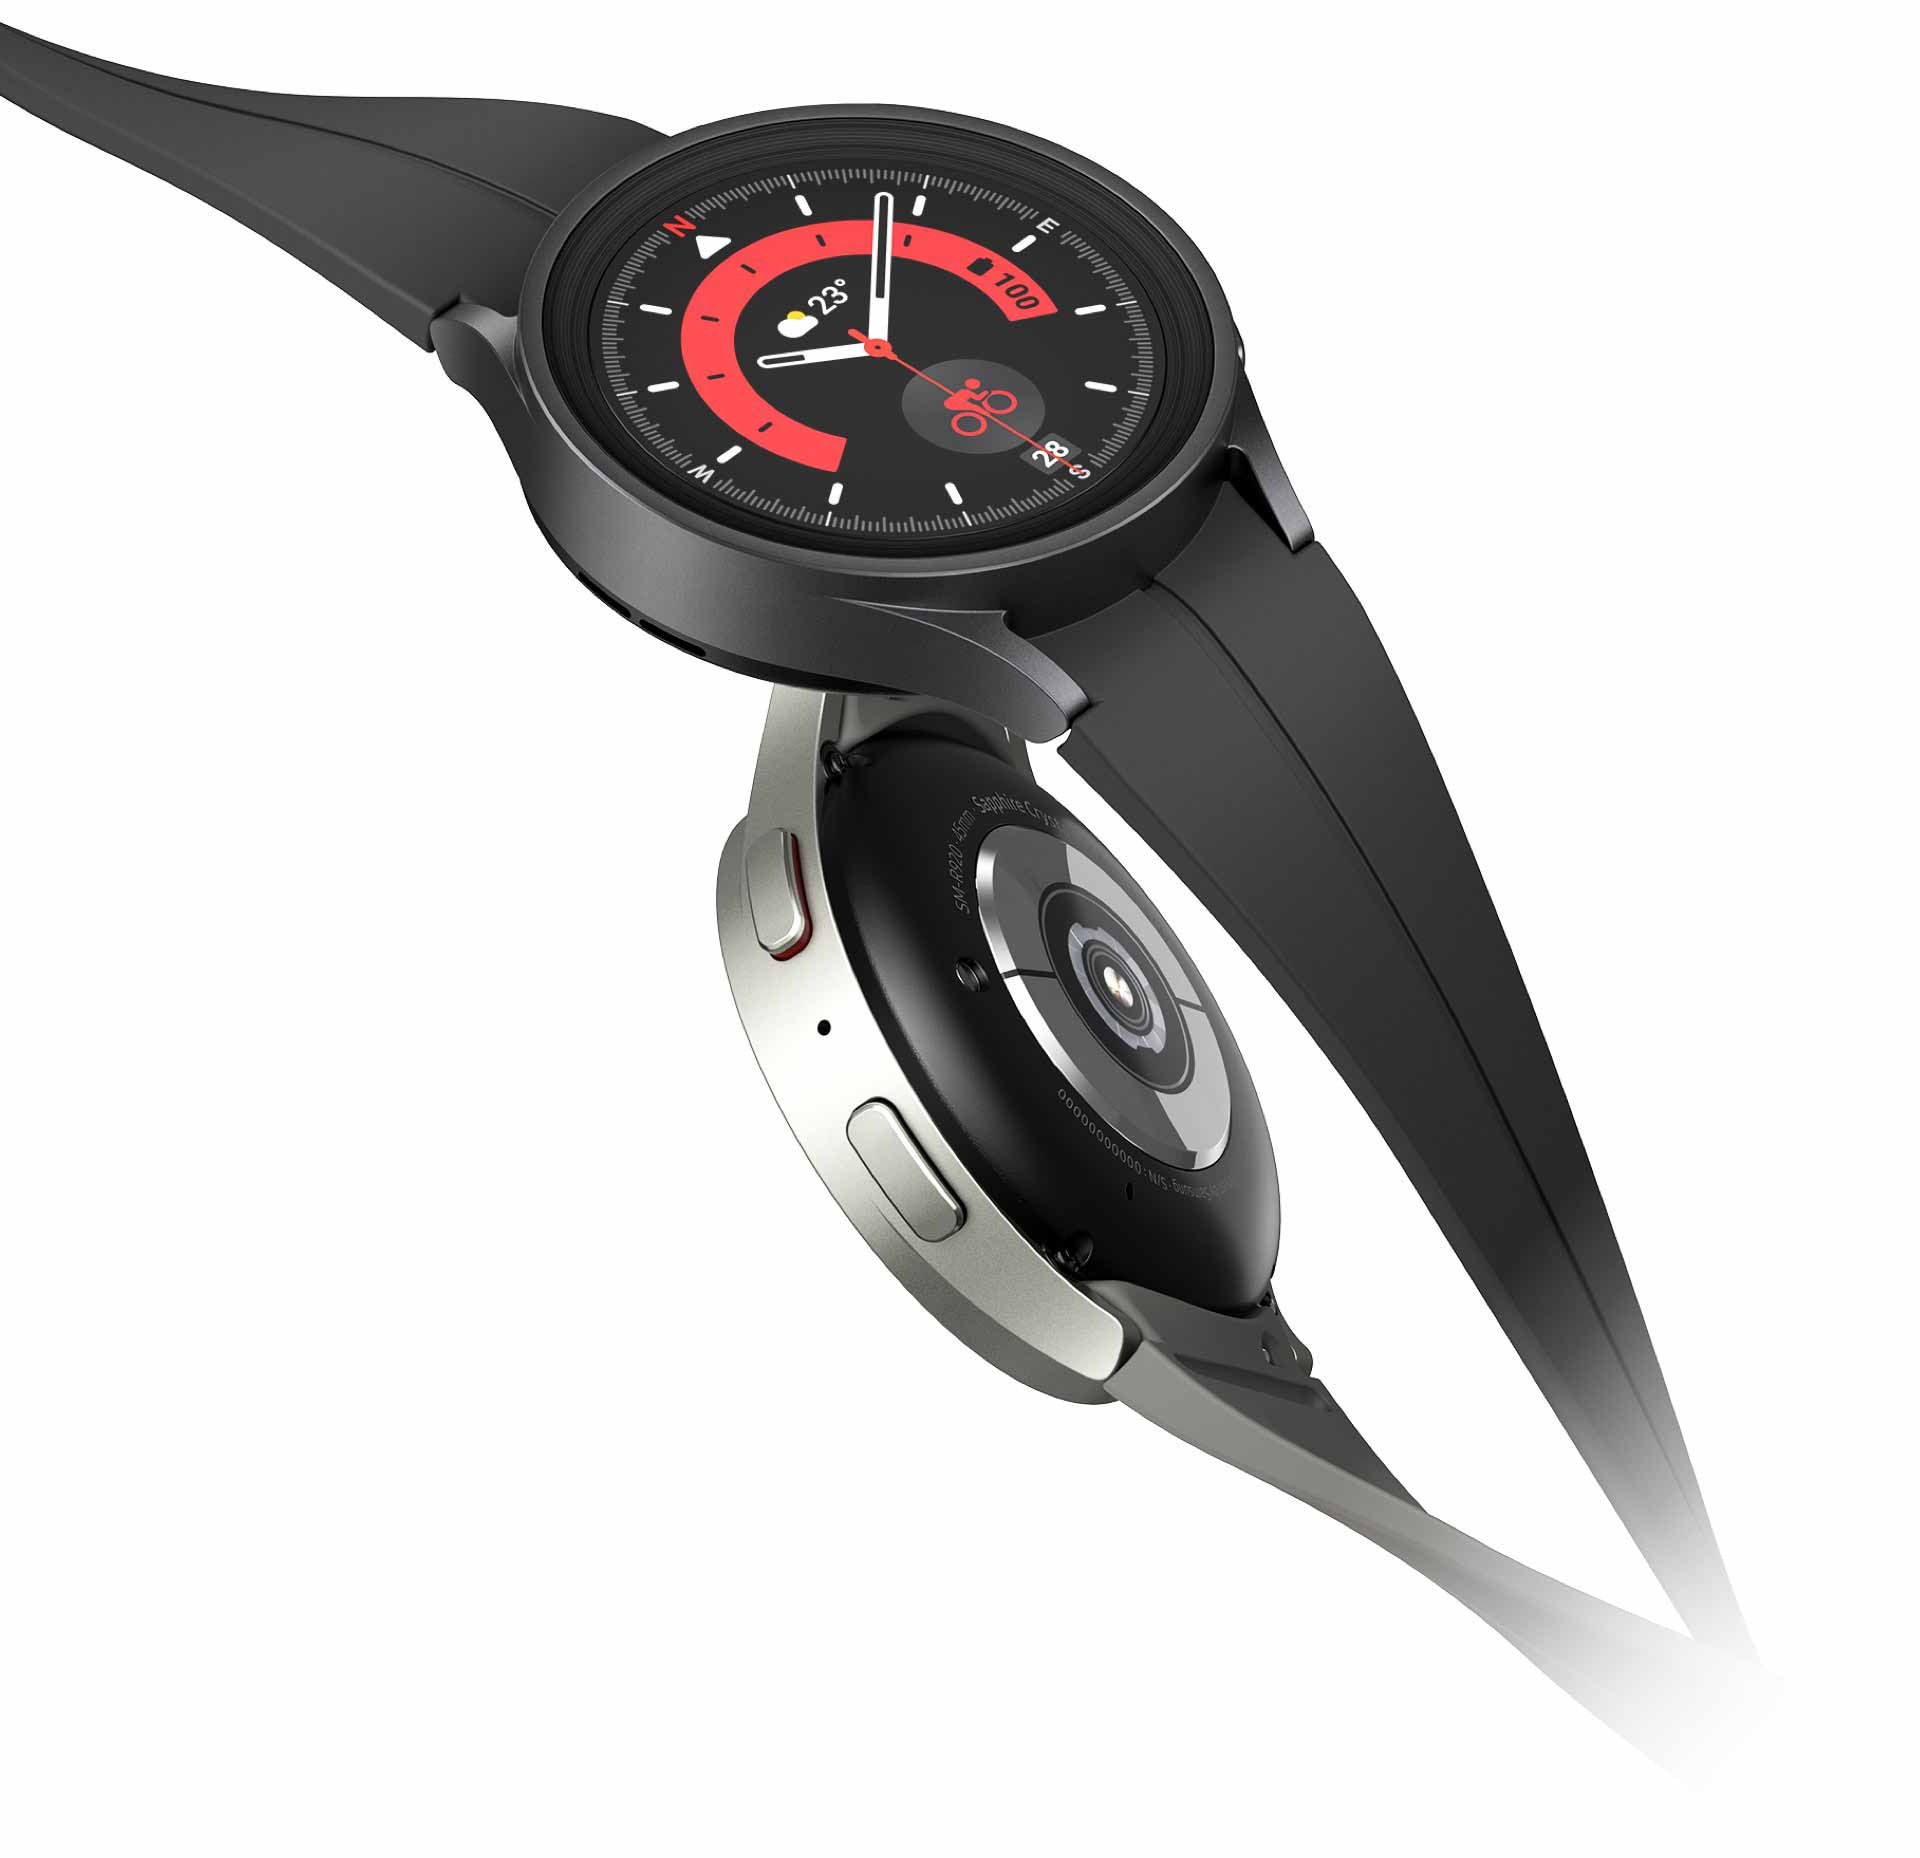 שני מכשירי Galaxy Watch5 Pro מחוברים זה לזה. ה-Galaxy Watch5 השחור בחלק העליון מציג את השעה על גבי תצוגת השעון, בעוד ה-Watch5 Pro האפור בחלק התחתון מציג את הלחצנים הצדדיים והצד התחתון של השעון כולל את ה-Bio Sensor IC. 